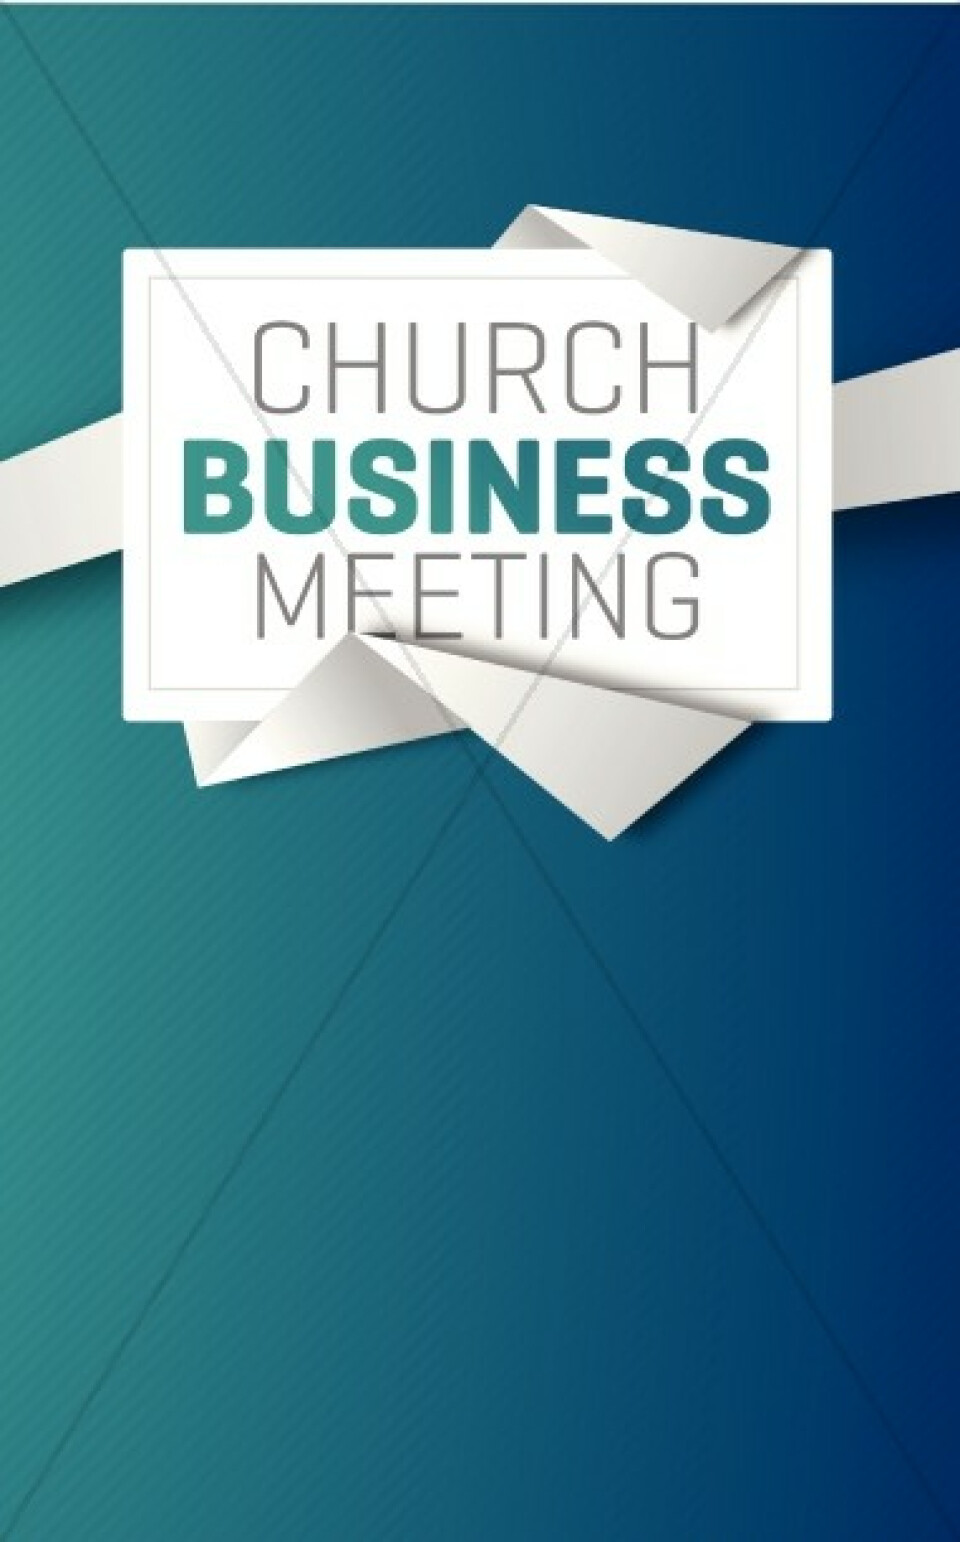 Sunday October 27, 2019 ~Next Congregational Business Meeting 